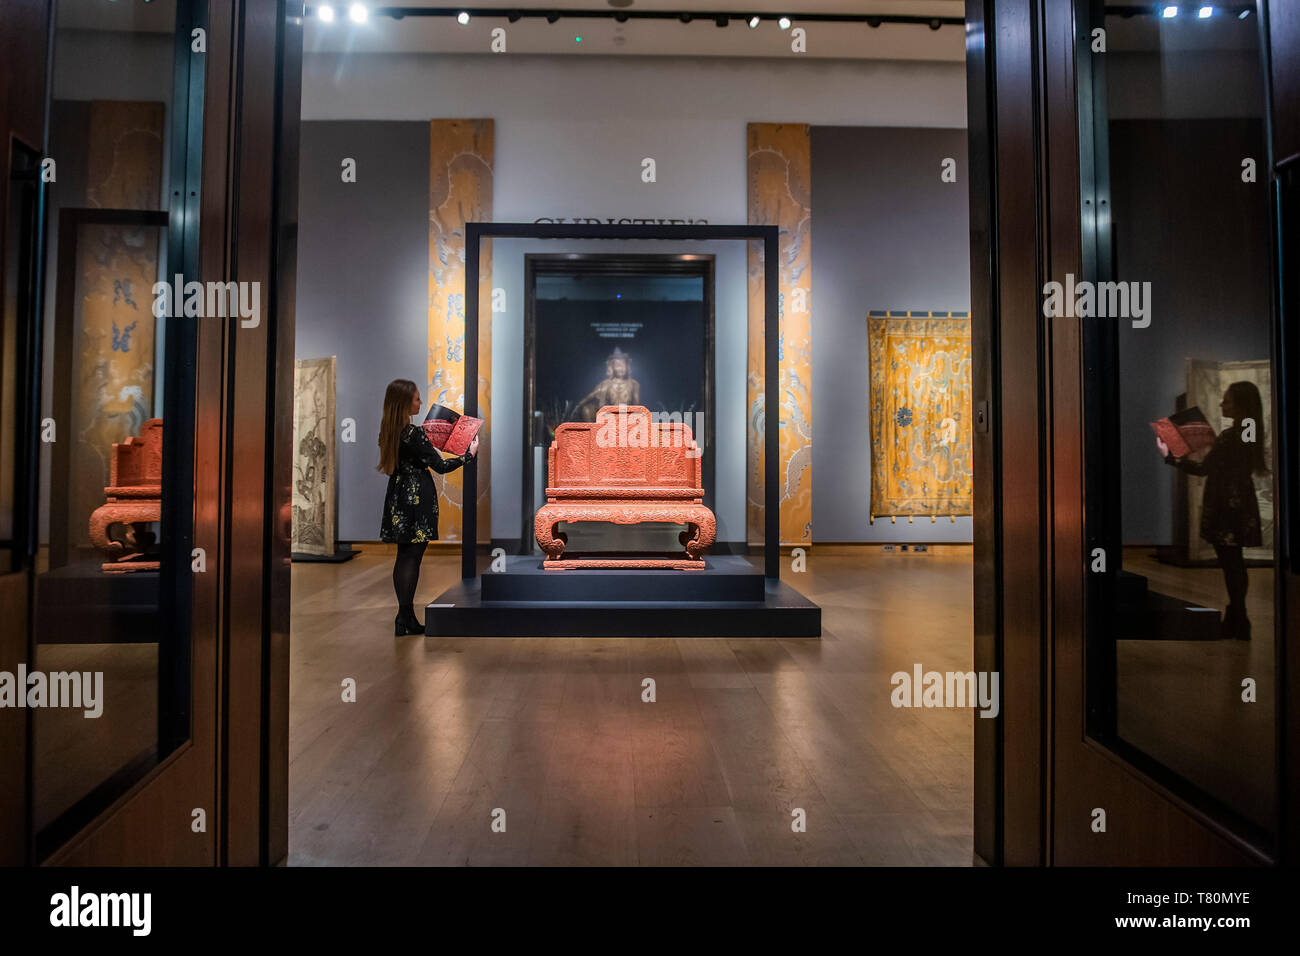 Londres, Royaume-Uni. 10 mai, 2019. Un Three-Colored Impériale rare neuf Laque Dragon trône, 1736-95, est £0,8 à 2m - Aperçu de Christie's maison de ventes aux enchères d'Art Asiatique de Printemps à Londres. Crédit : Guy Bell/Alamy Live News Banque D'Images